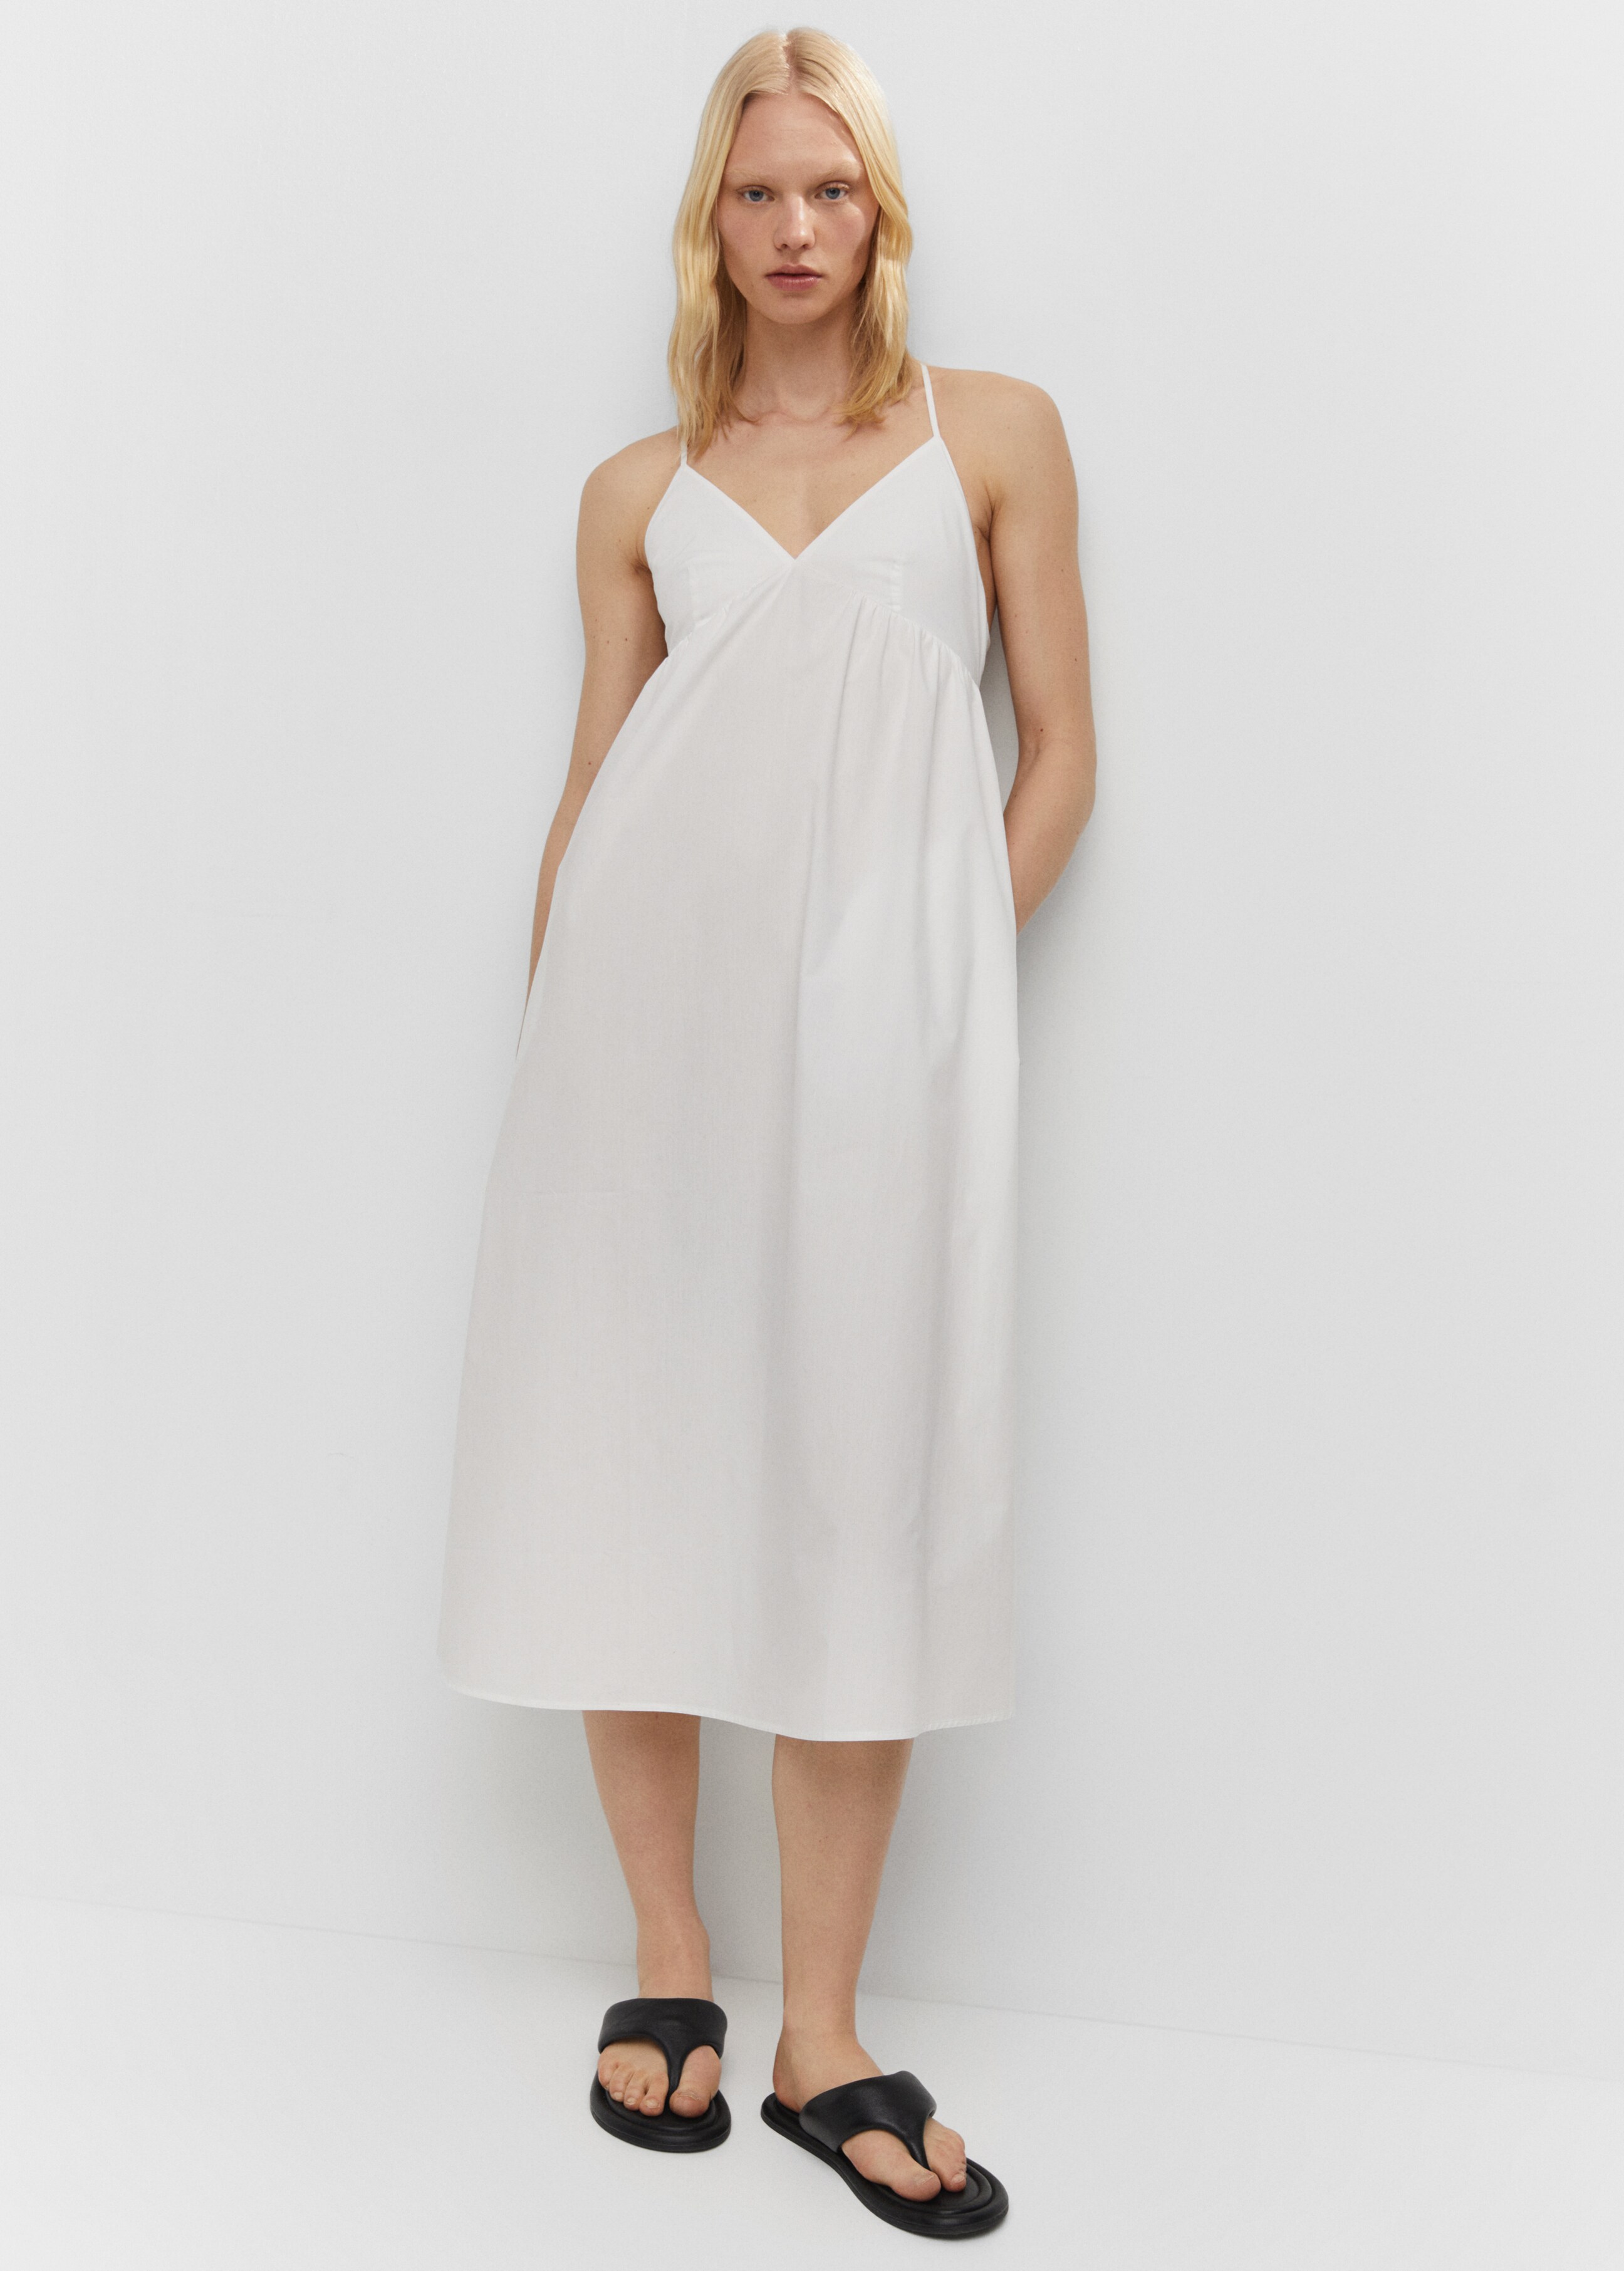 Φόρεμα βαμβάκι χιαστί πλάτη - Λεπτομέρεια του προϊόντος 2